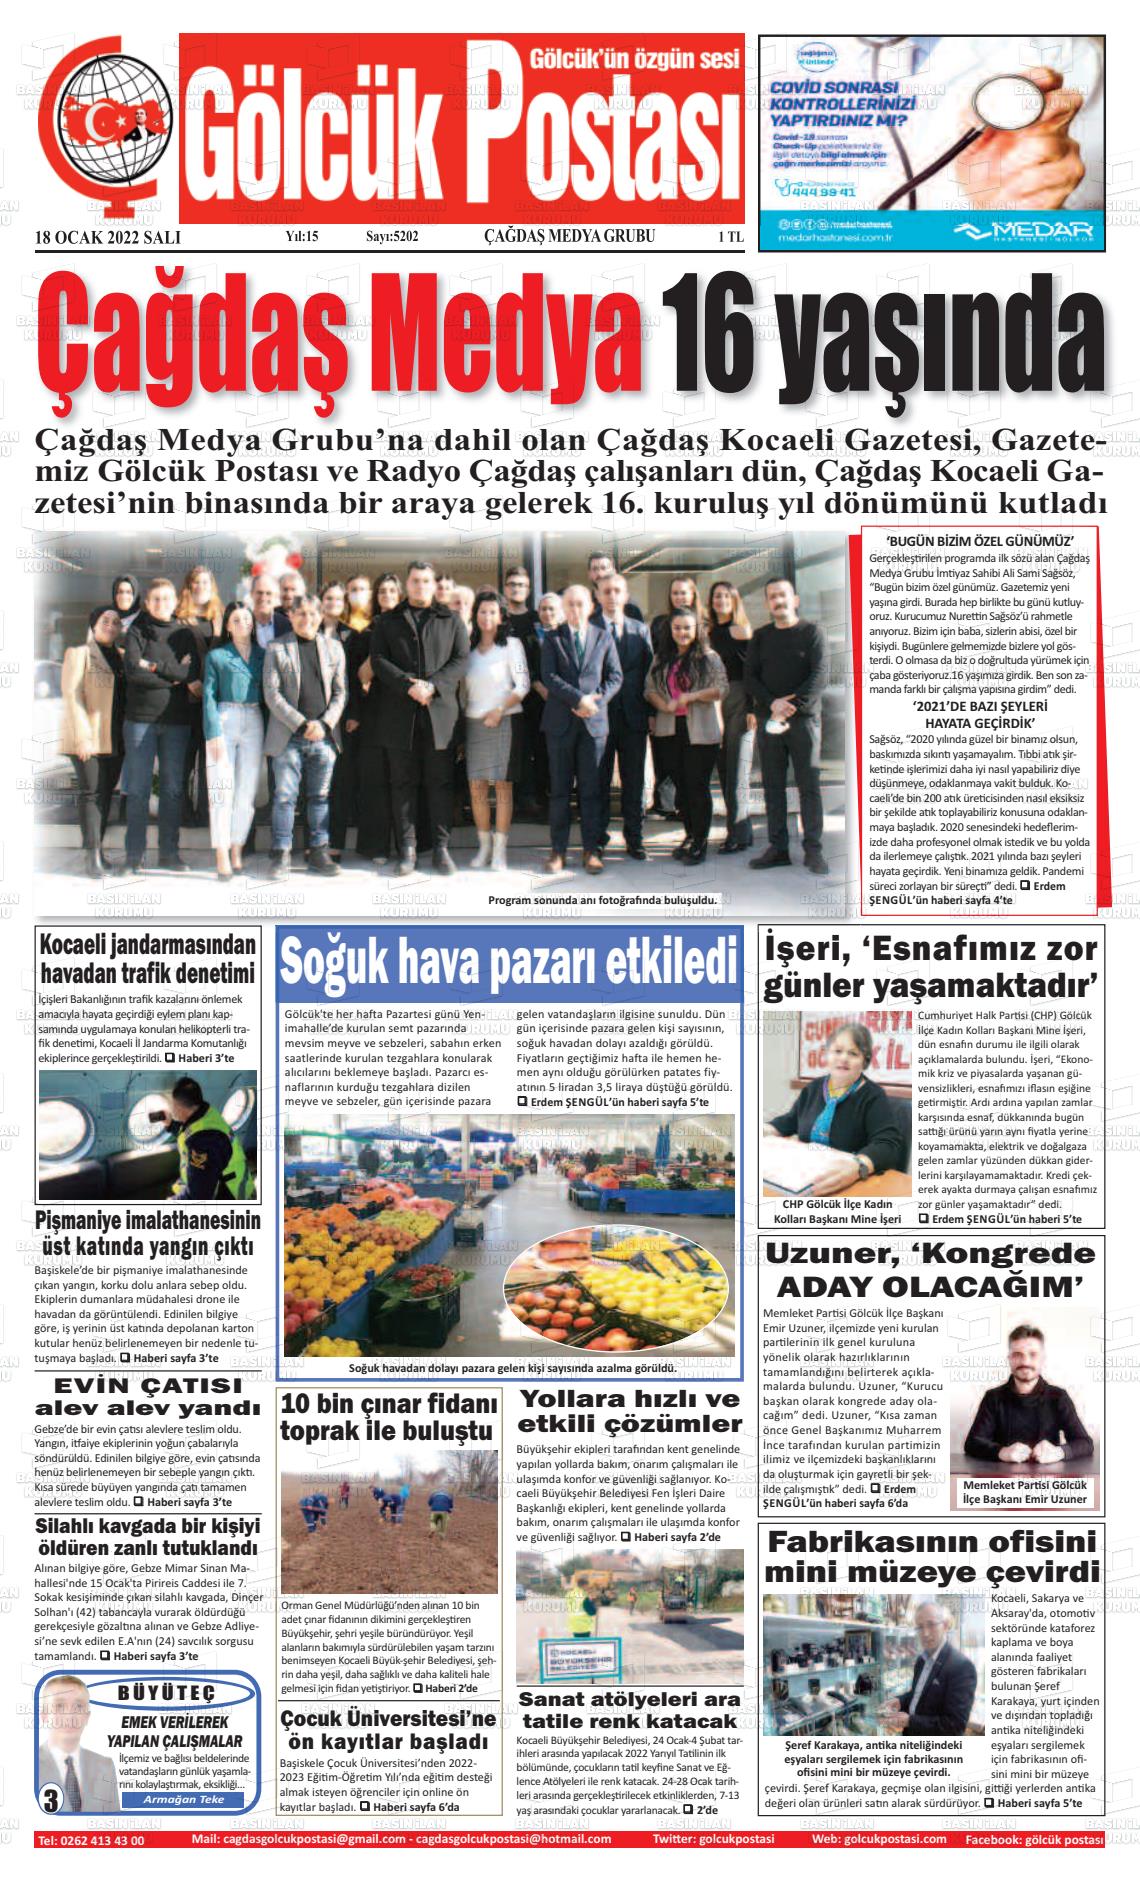 18 Ocak 2022 Gölcük Postasi Gazete Manşeti